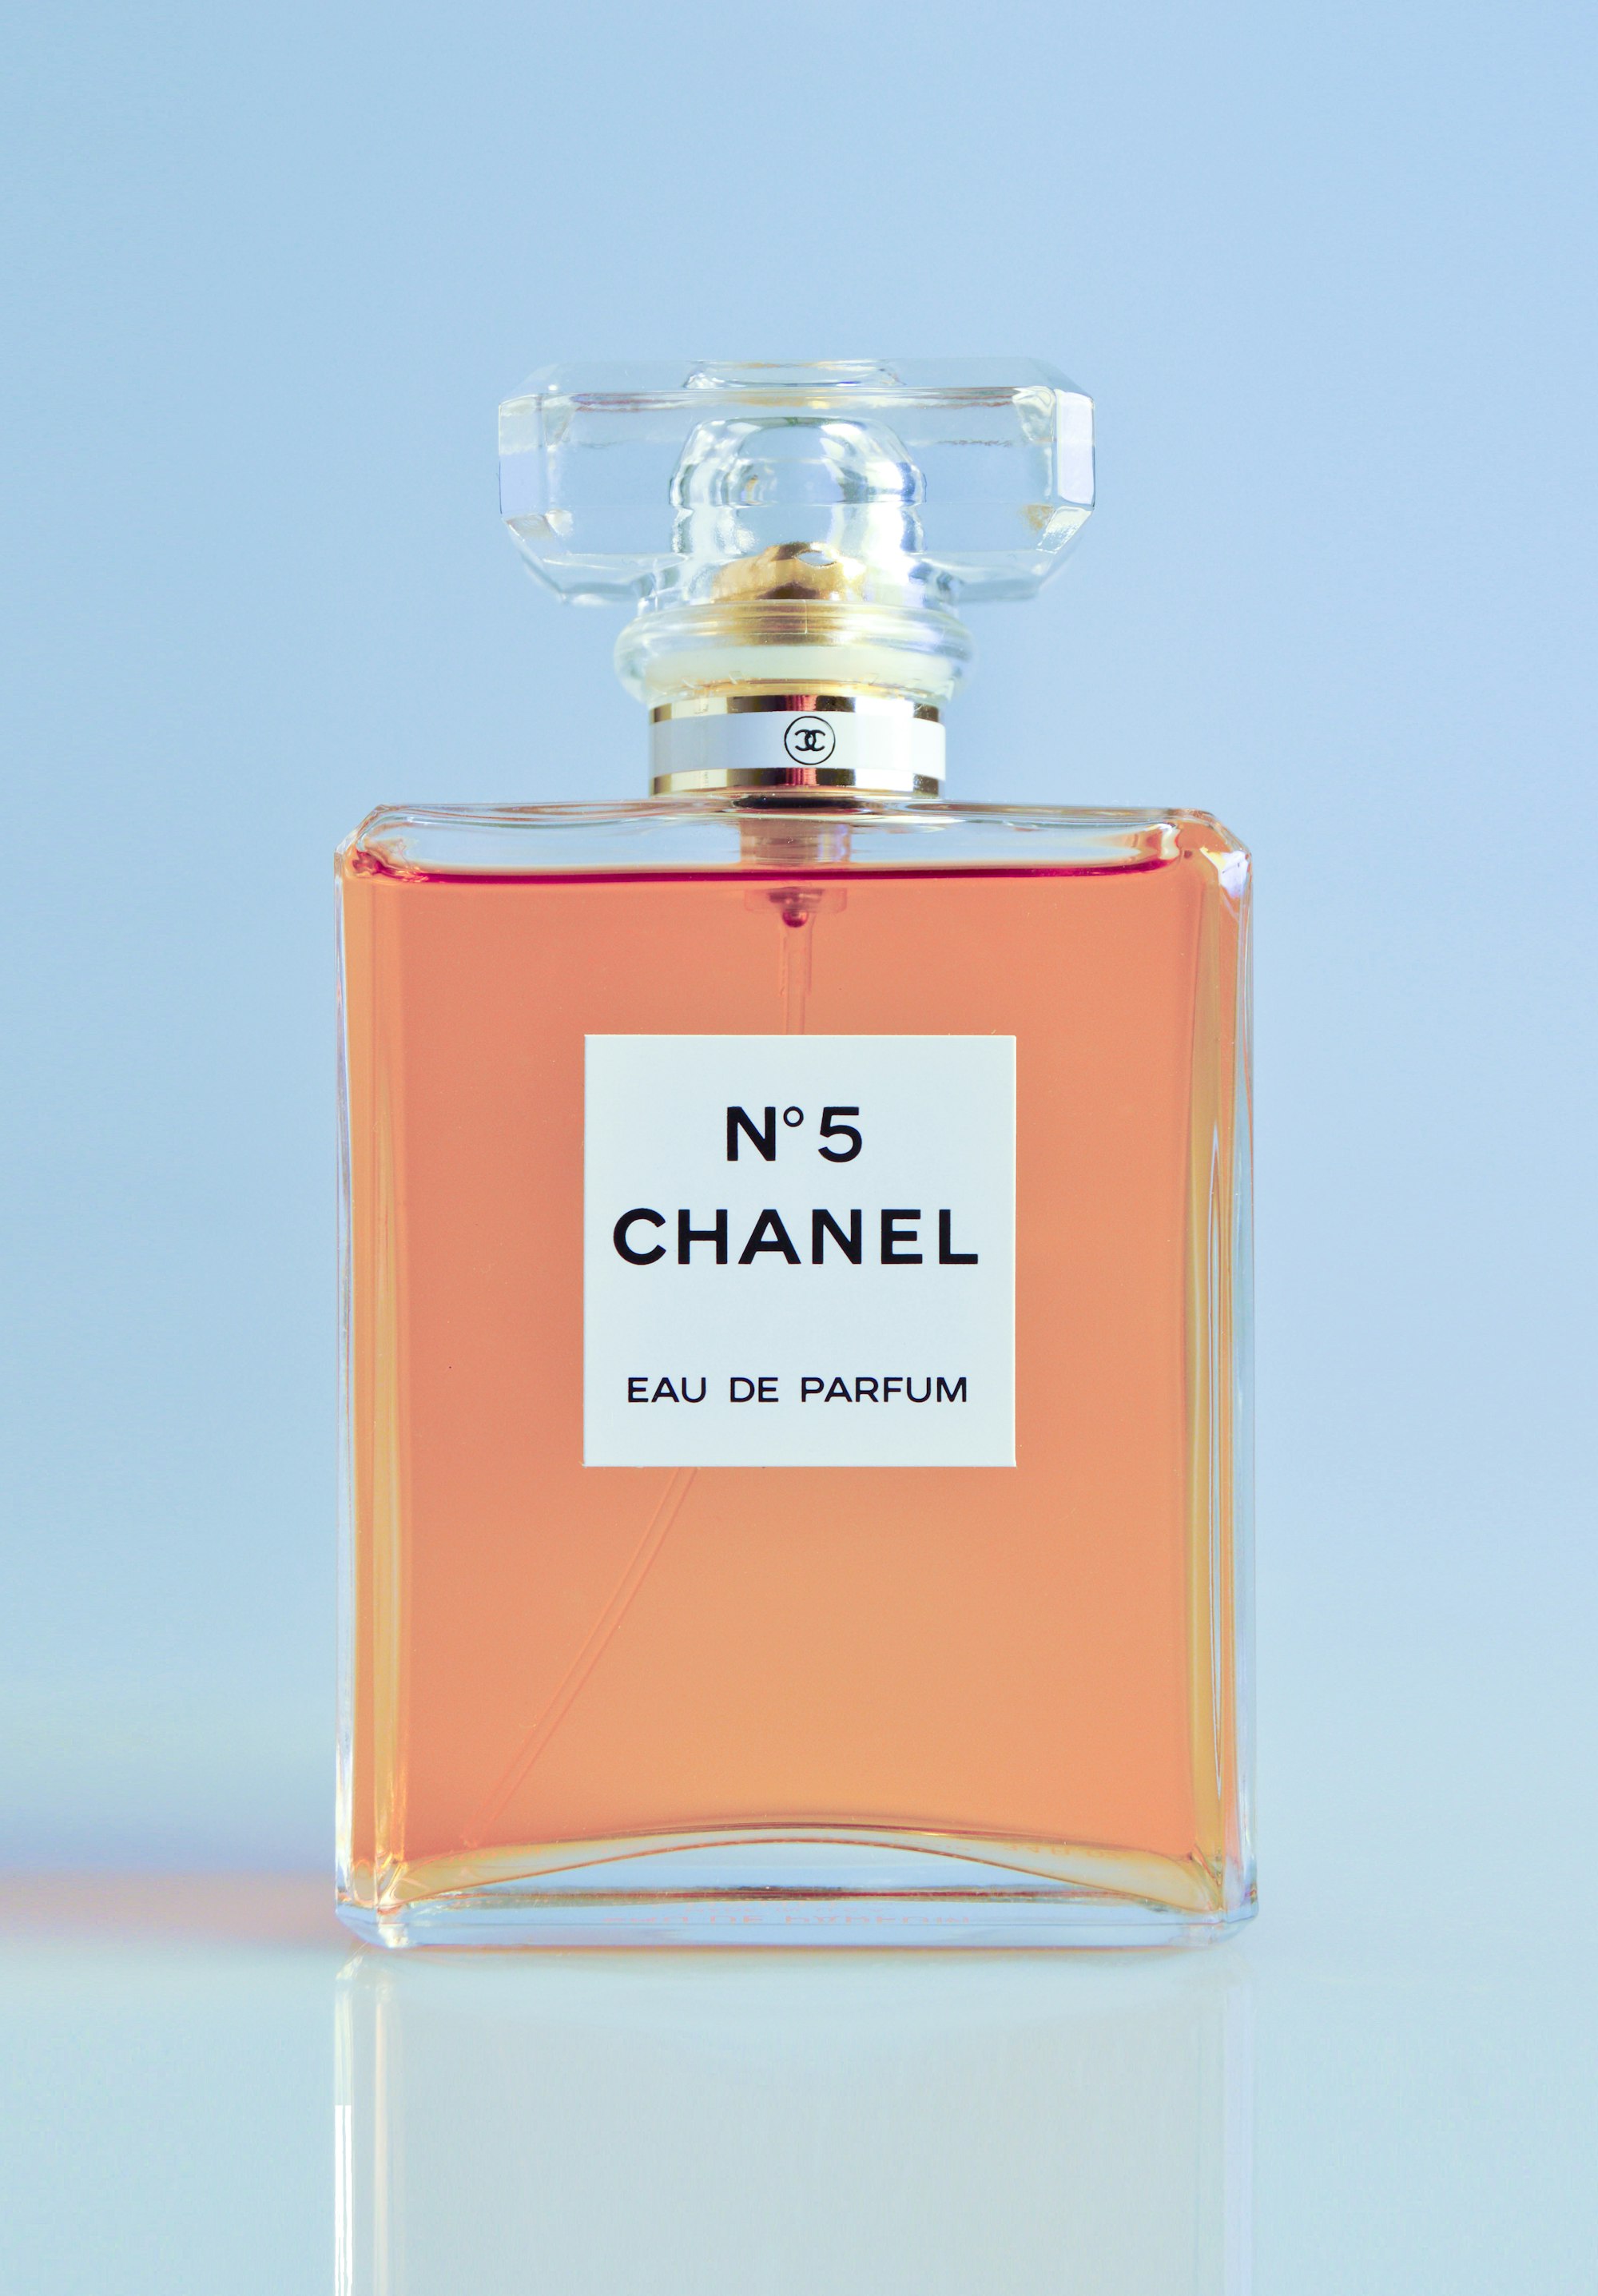 Bleu by Chanel - Eau De Parfum  Fragrance photography, Perfume